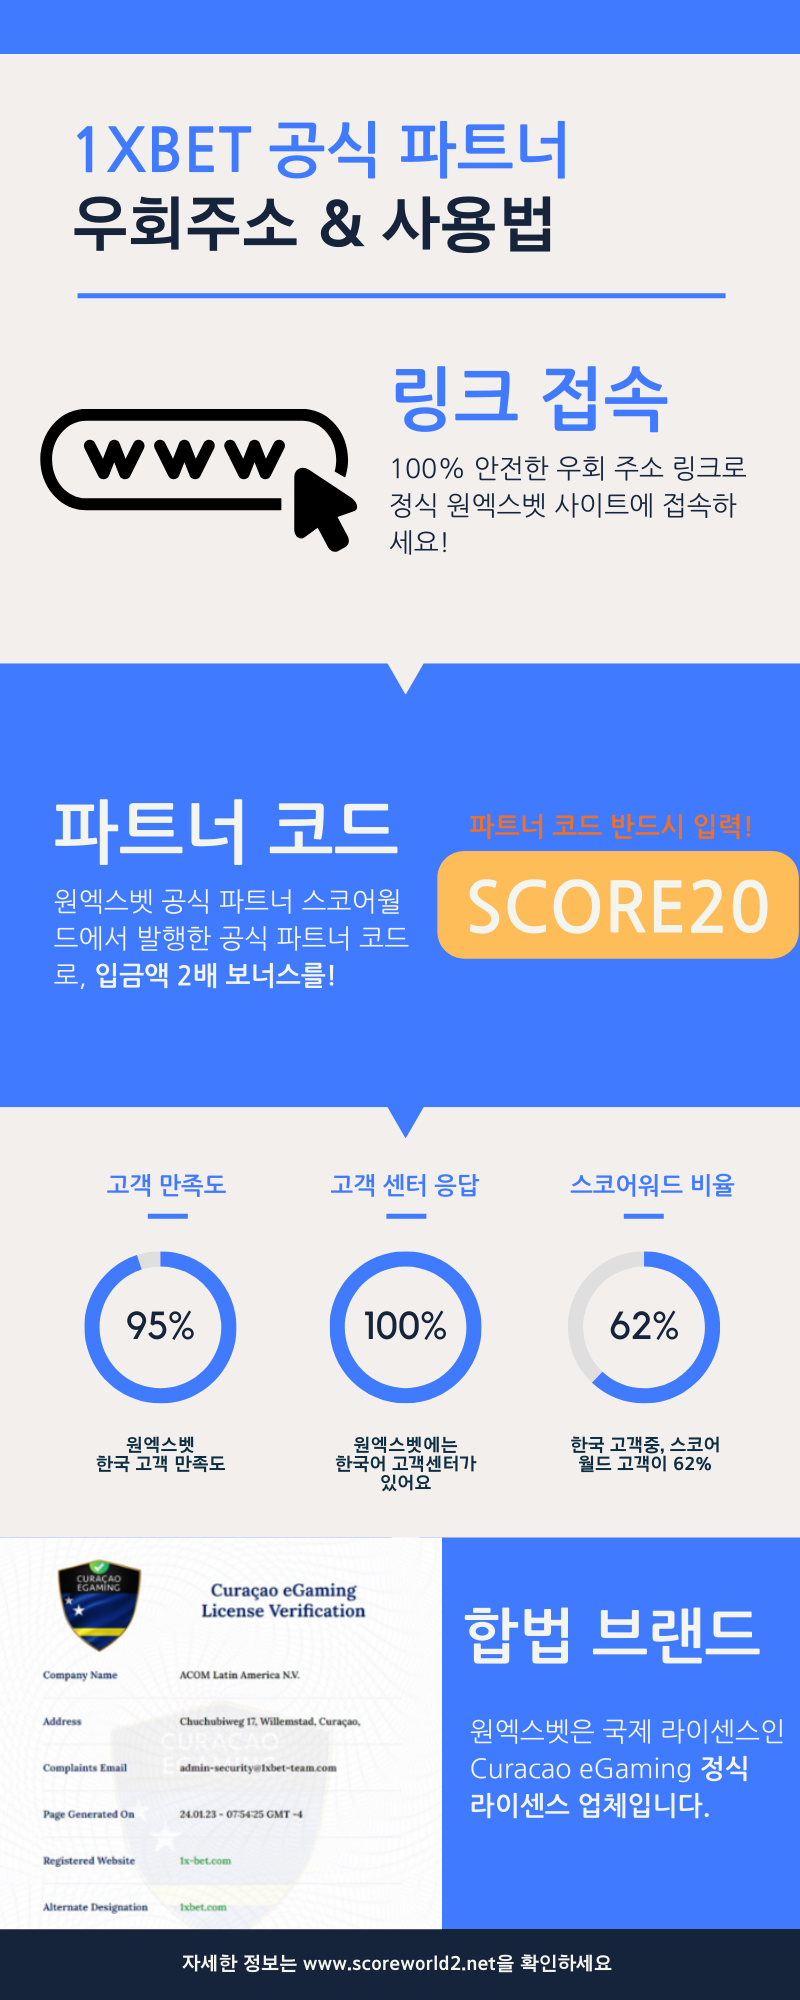 원엑스벳 우회주소: 한국 접속 안전 주소, 보너스 프로모션 코드 포함